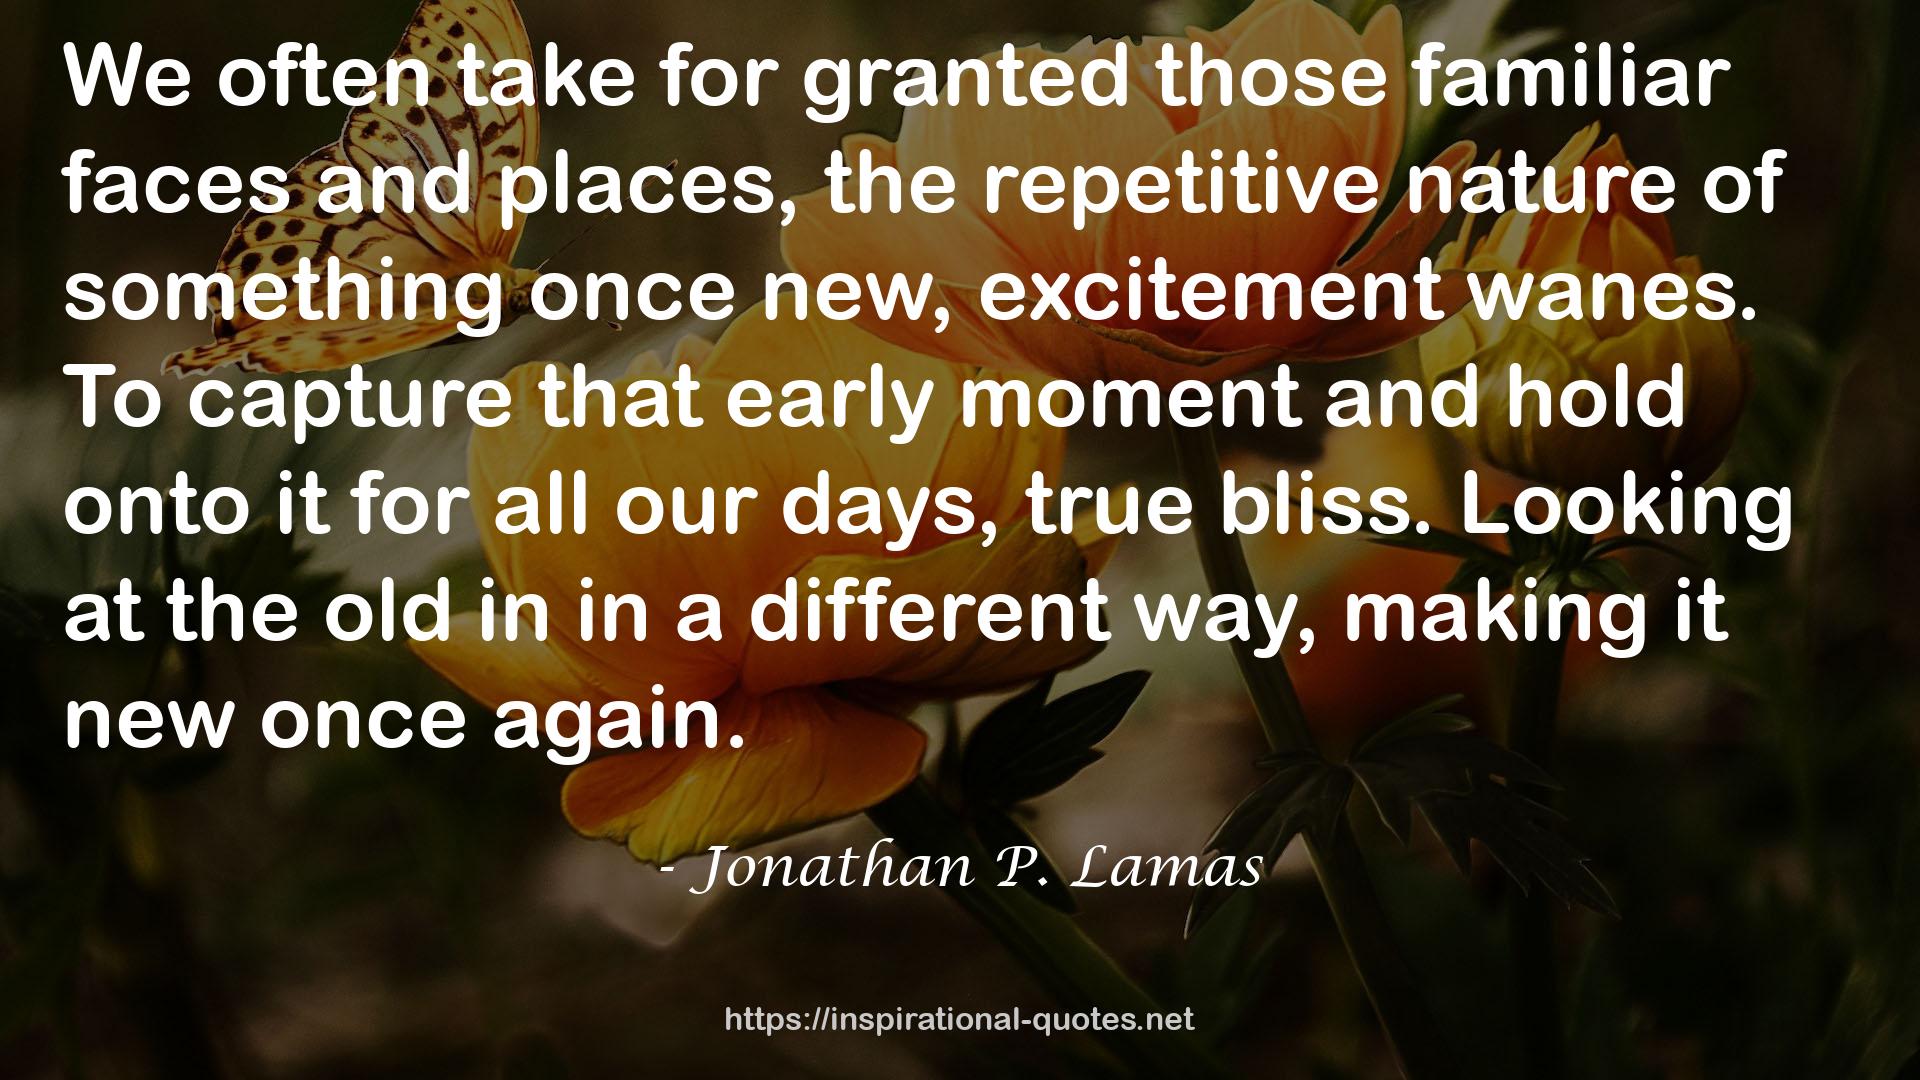 Jonathan P. Lamas QUOTES